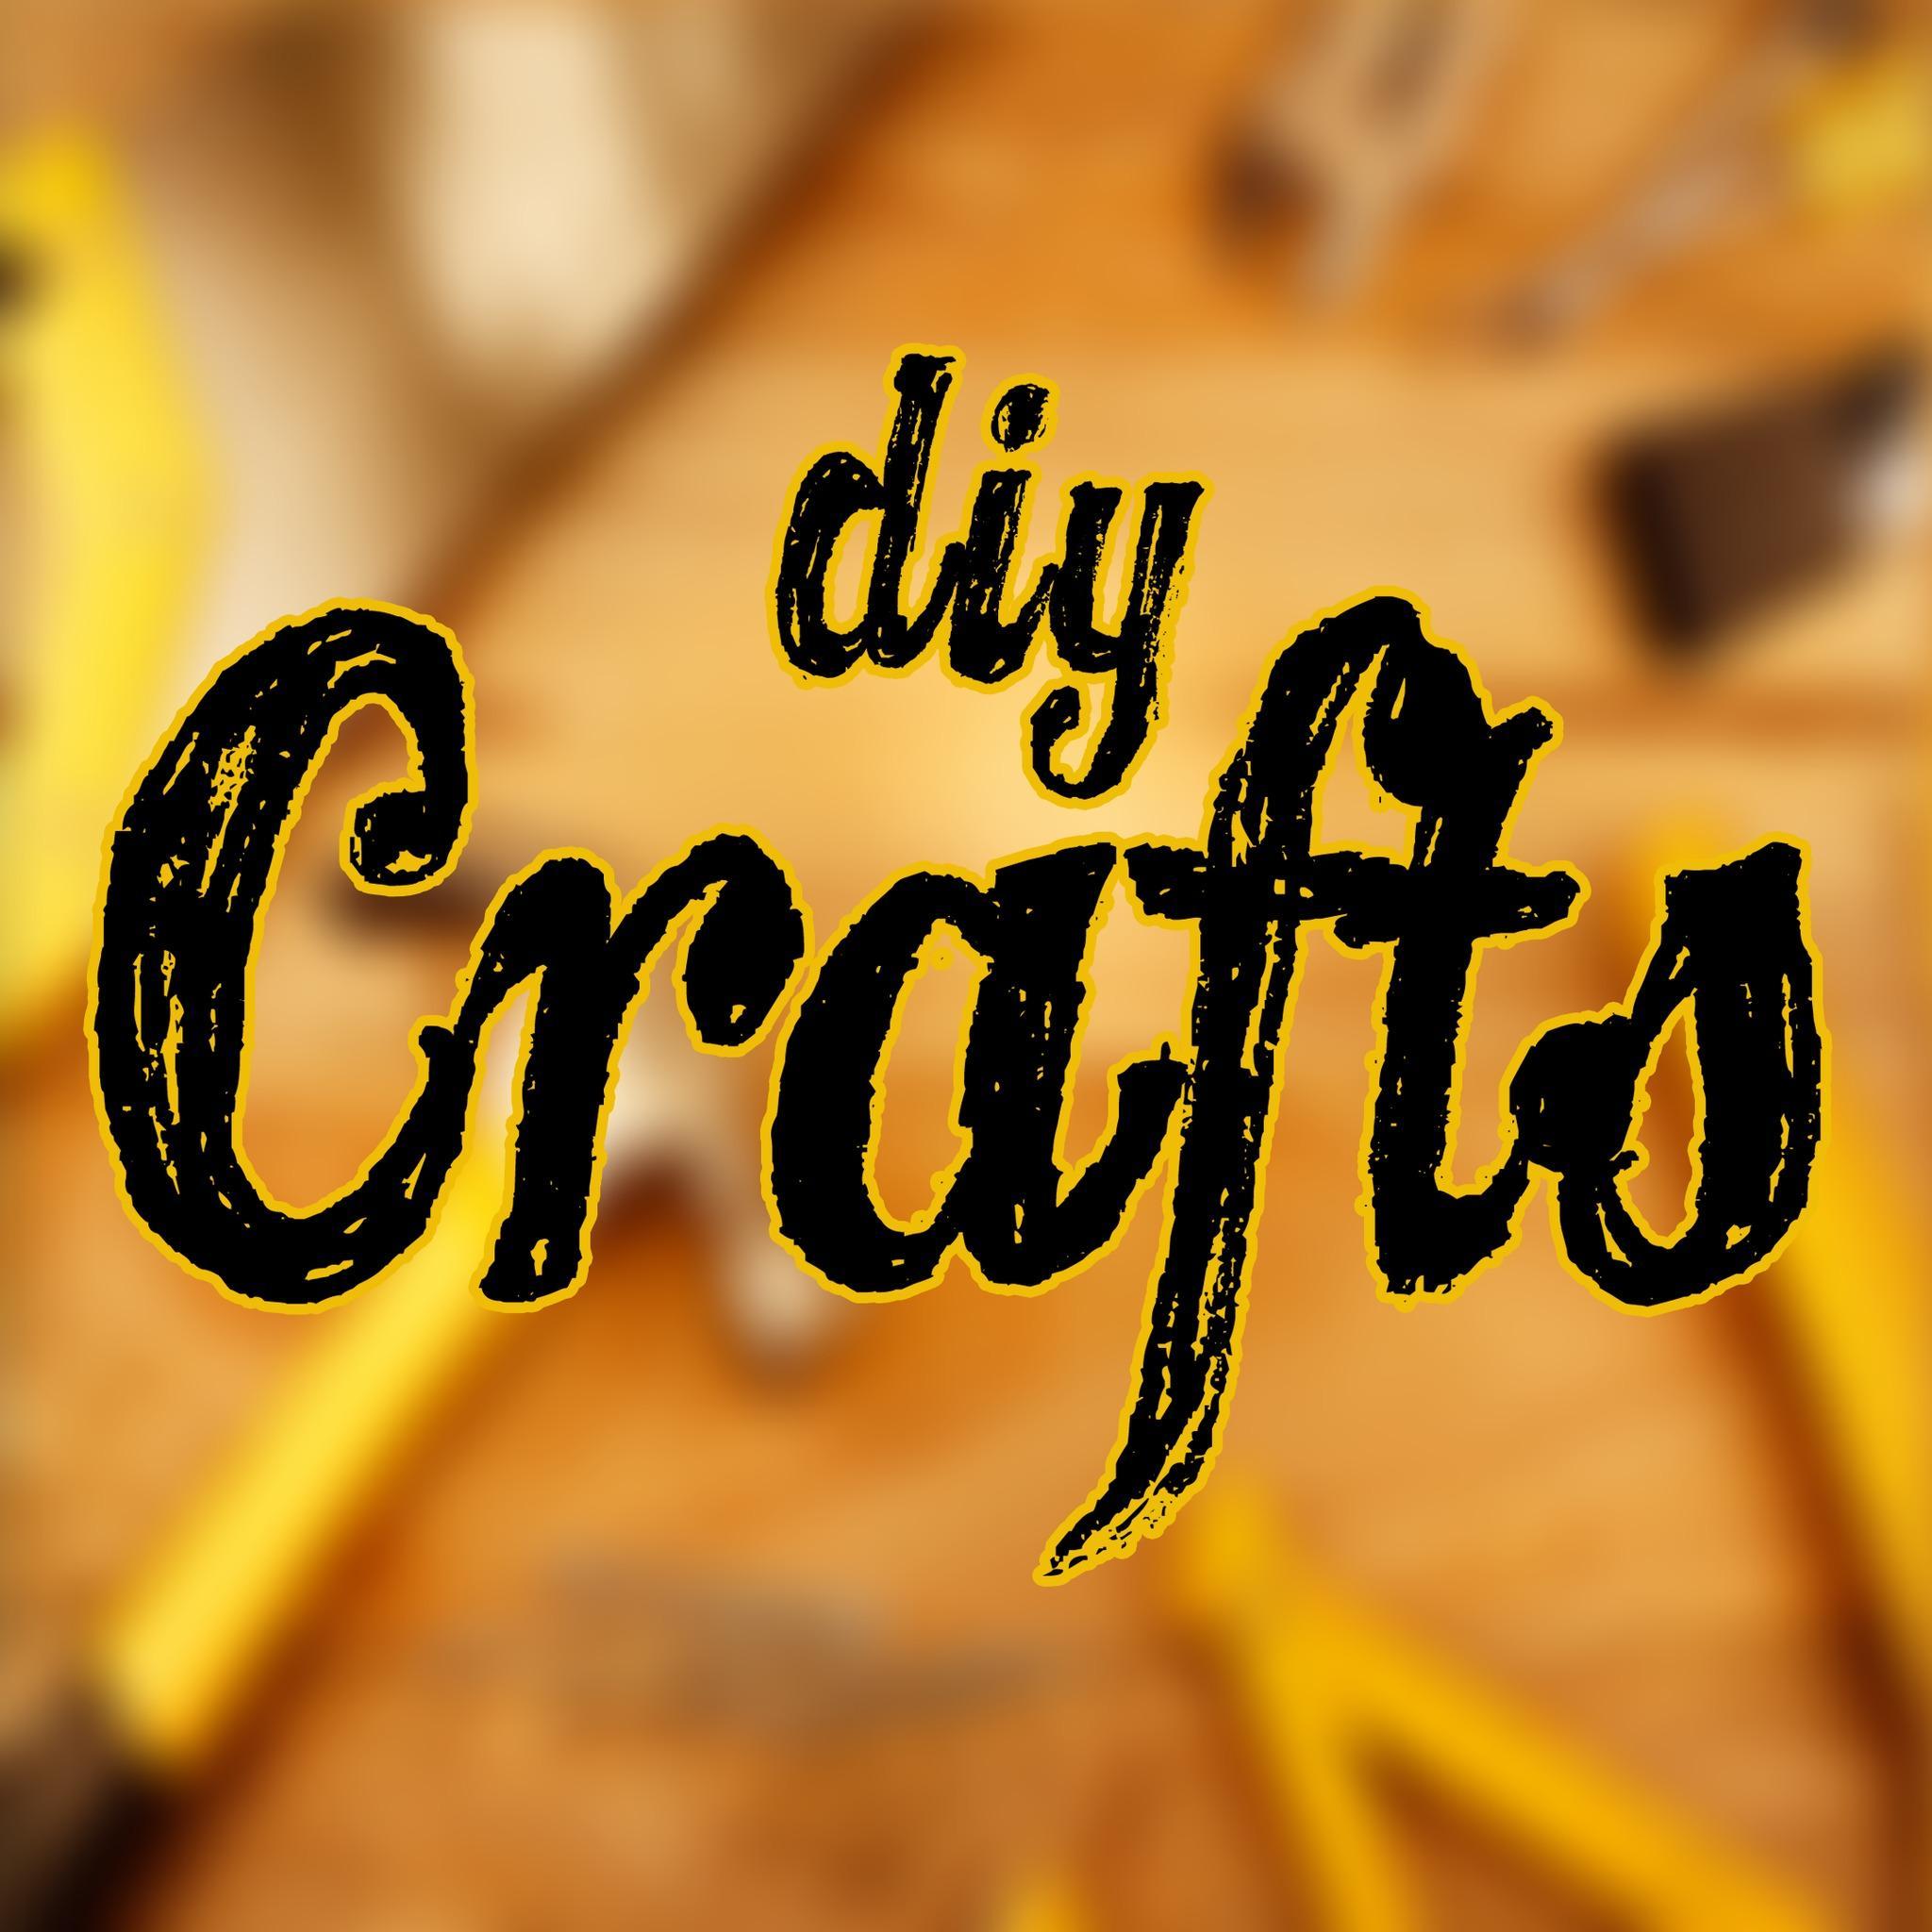 DIY & Crafts